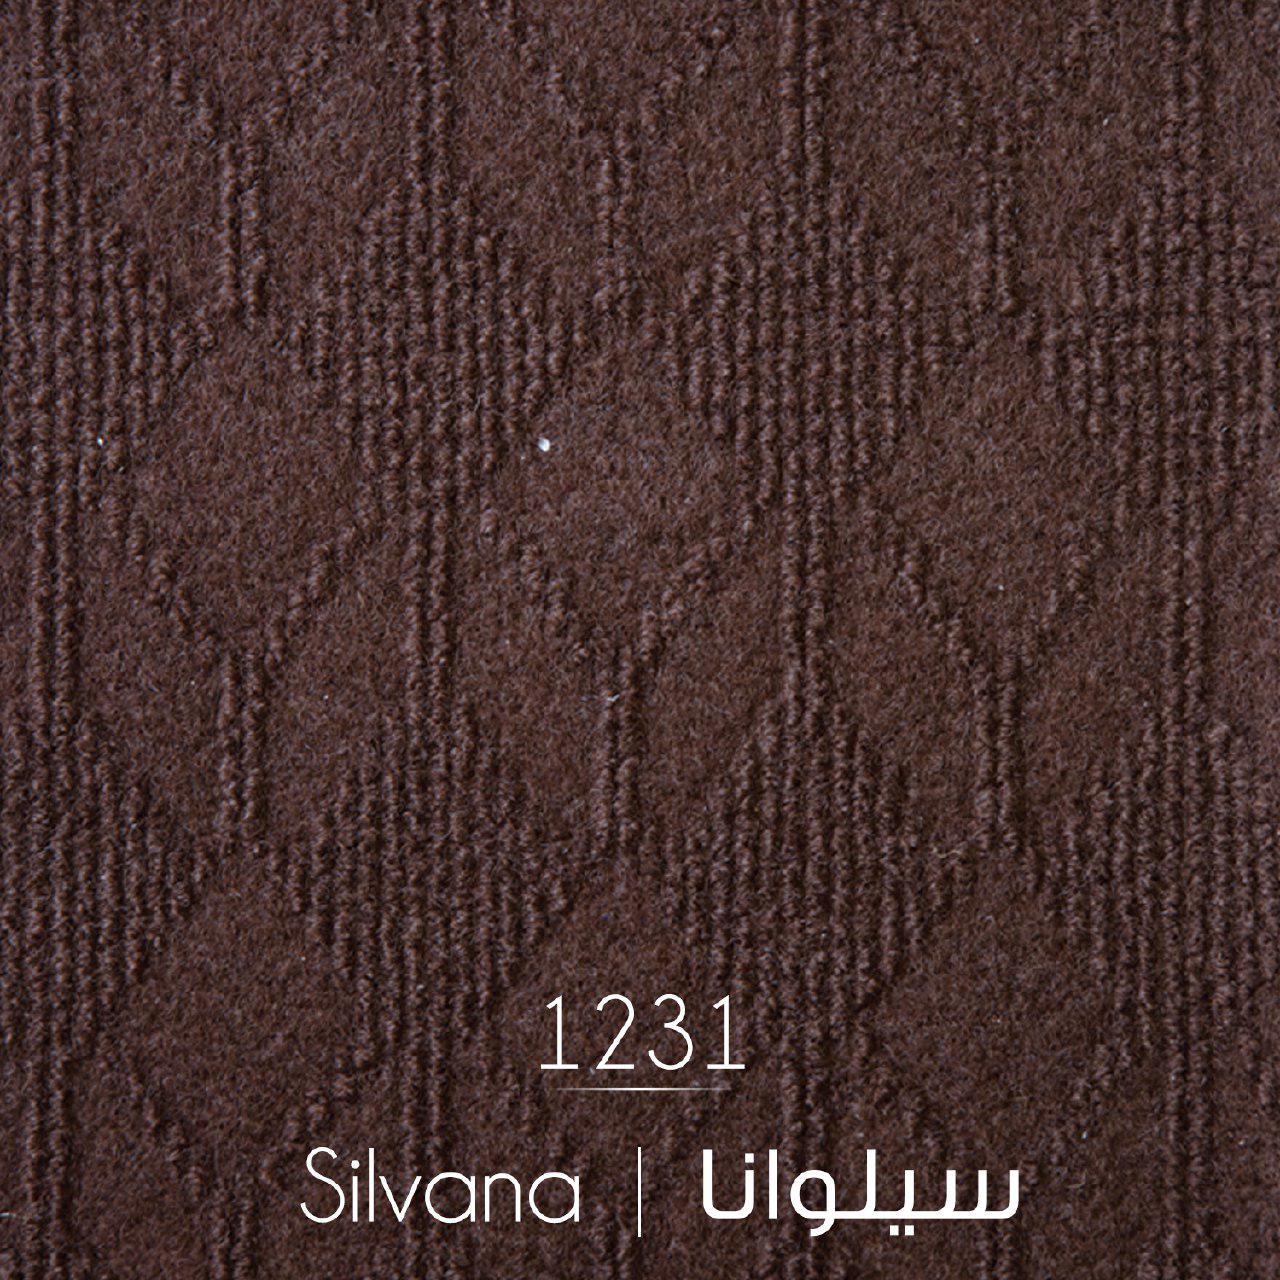 موکت ظریف مصور طرح سیلوانا کد 1231